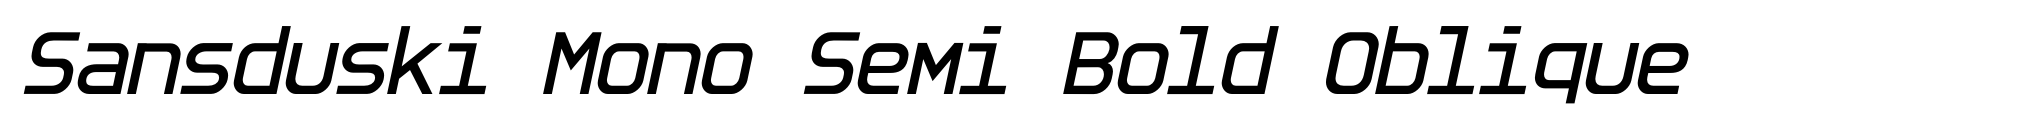 Sansduski Mono Semi Bold Oblique image